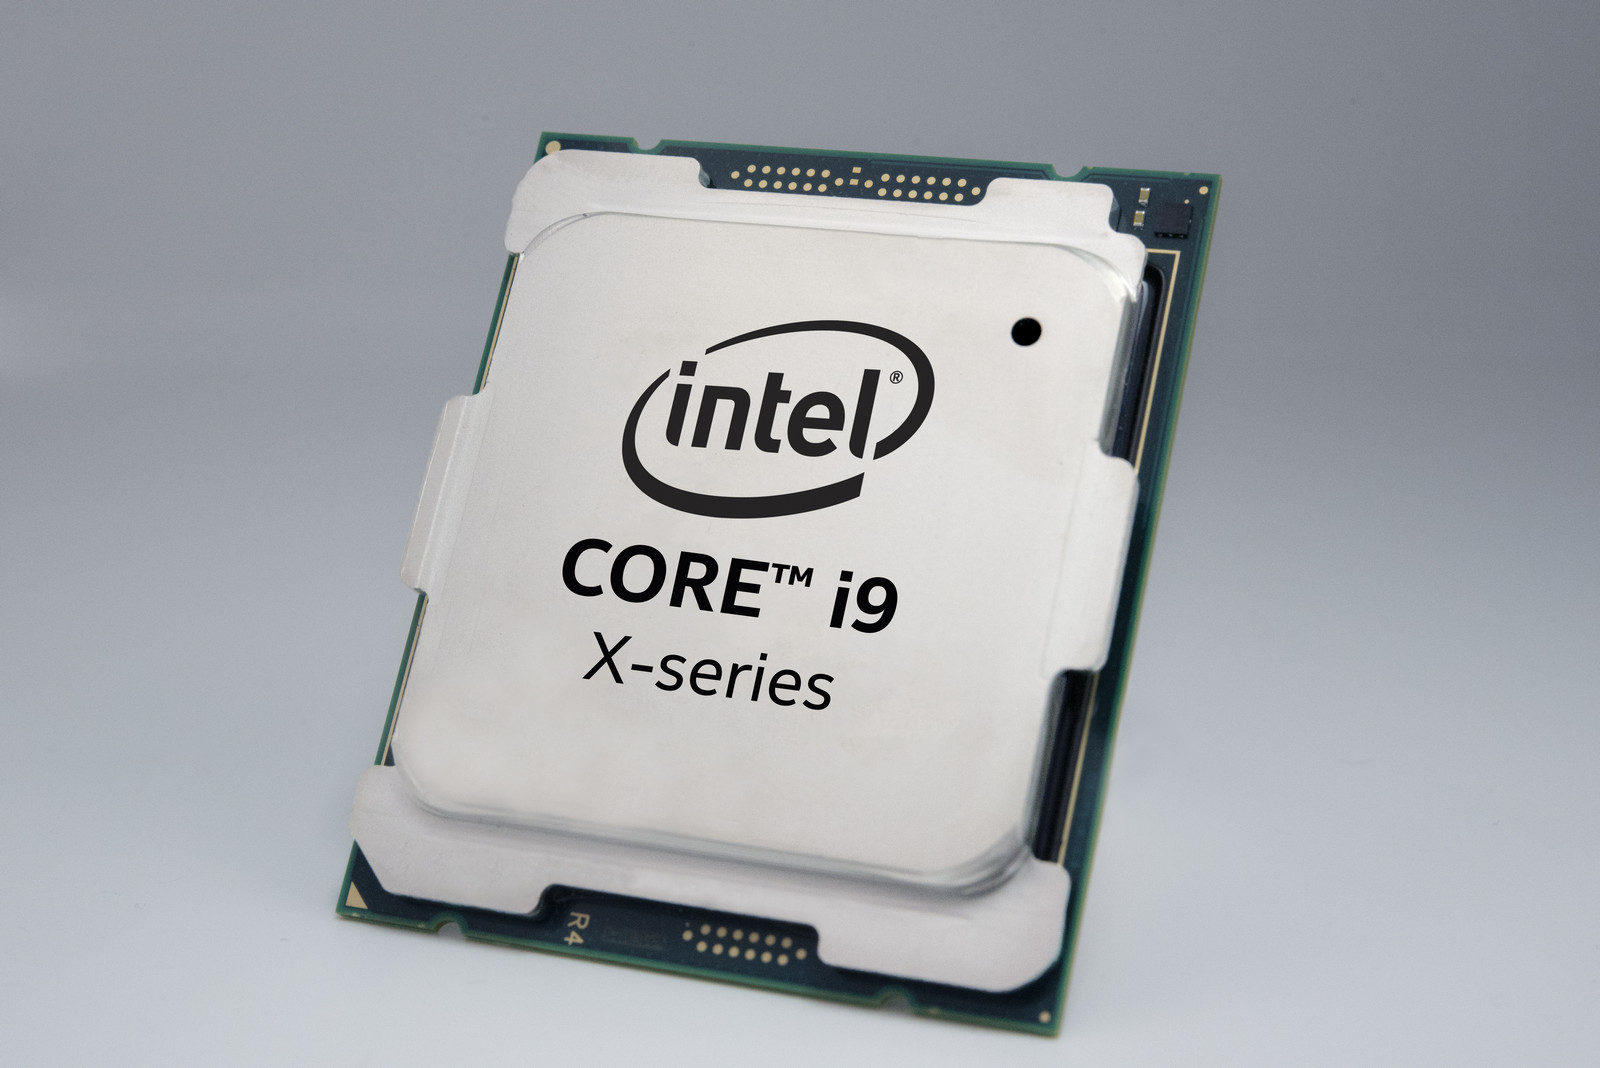 Intel Cascade Lake-X Core i9處理器只要前代半價就能入手，10月7日